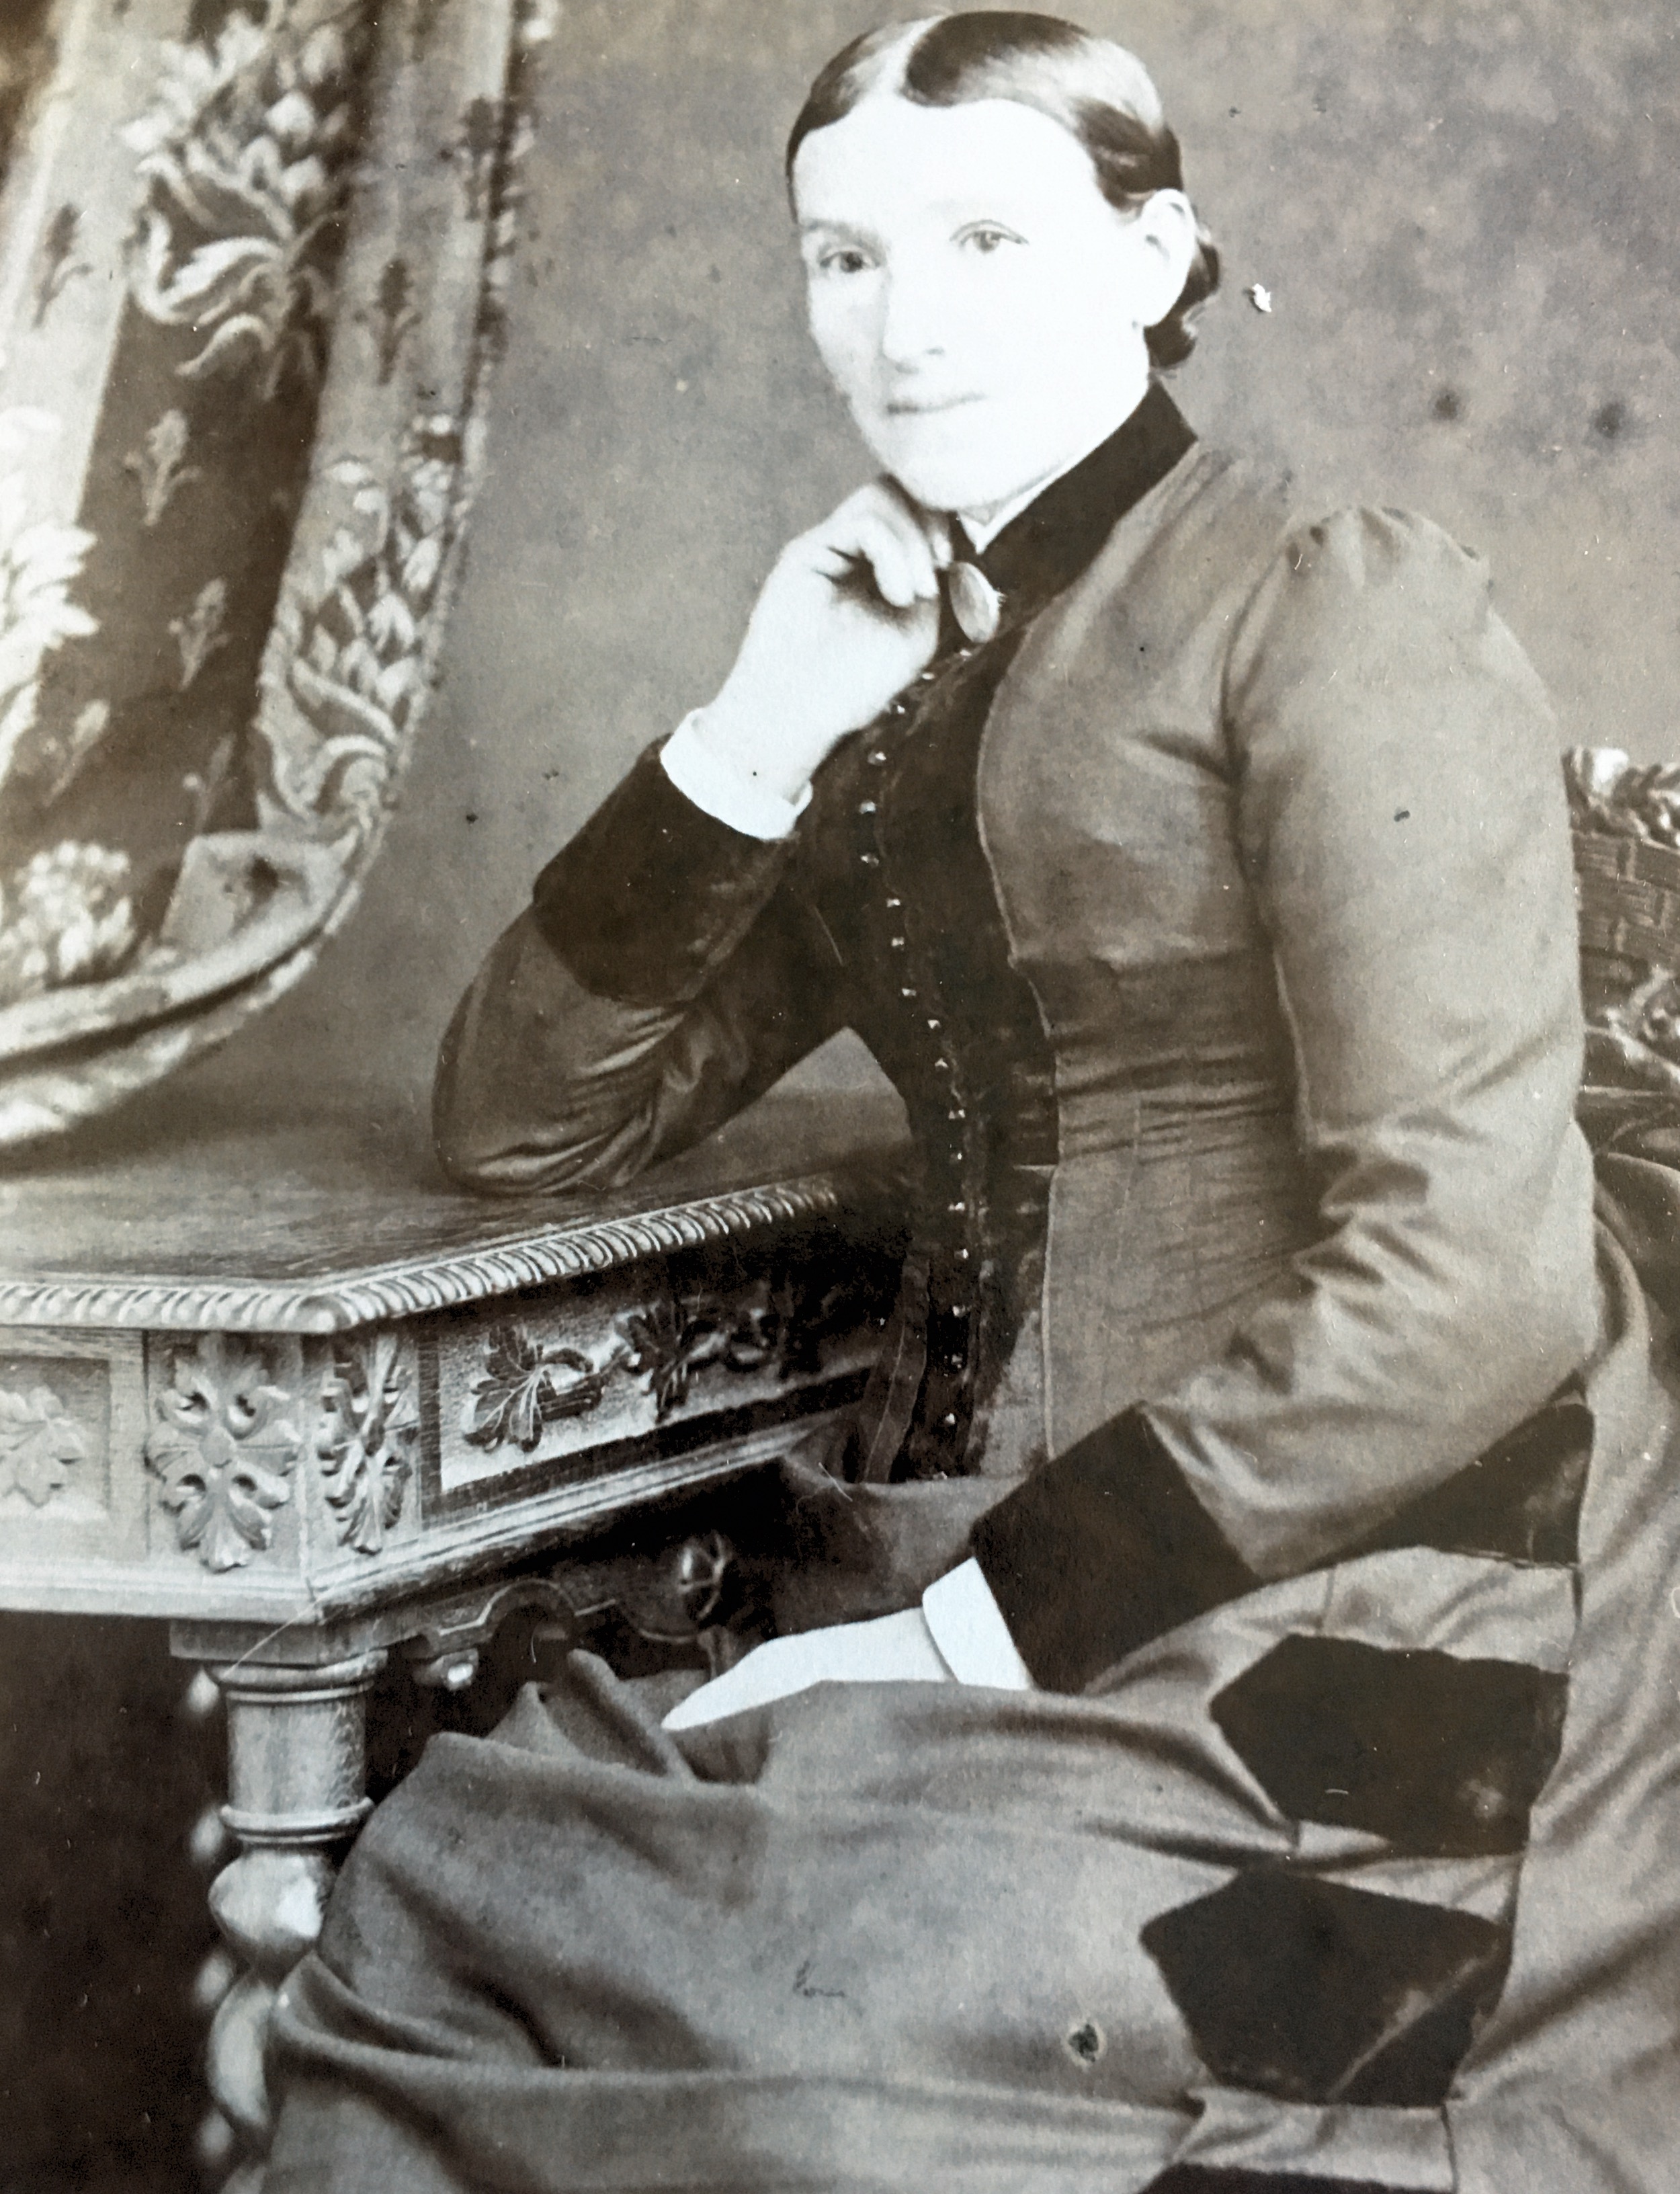 Ann Watts (nee Webb) 1833 - 1907
Wife of James